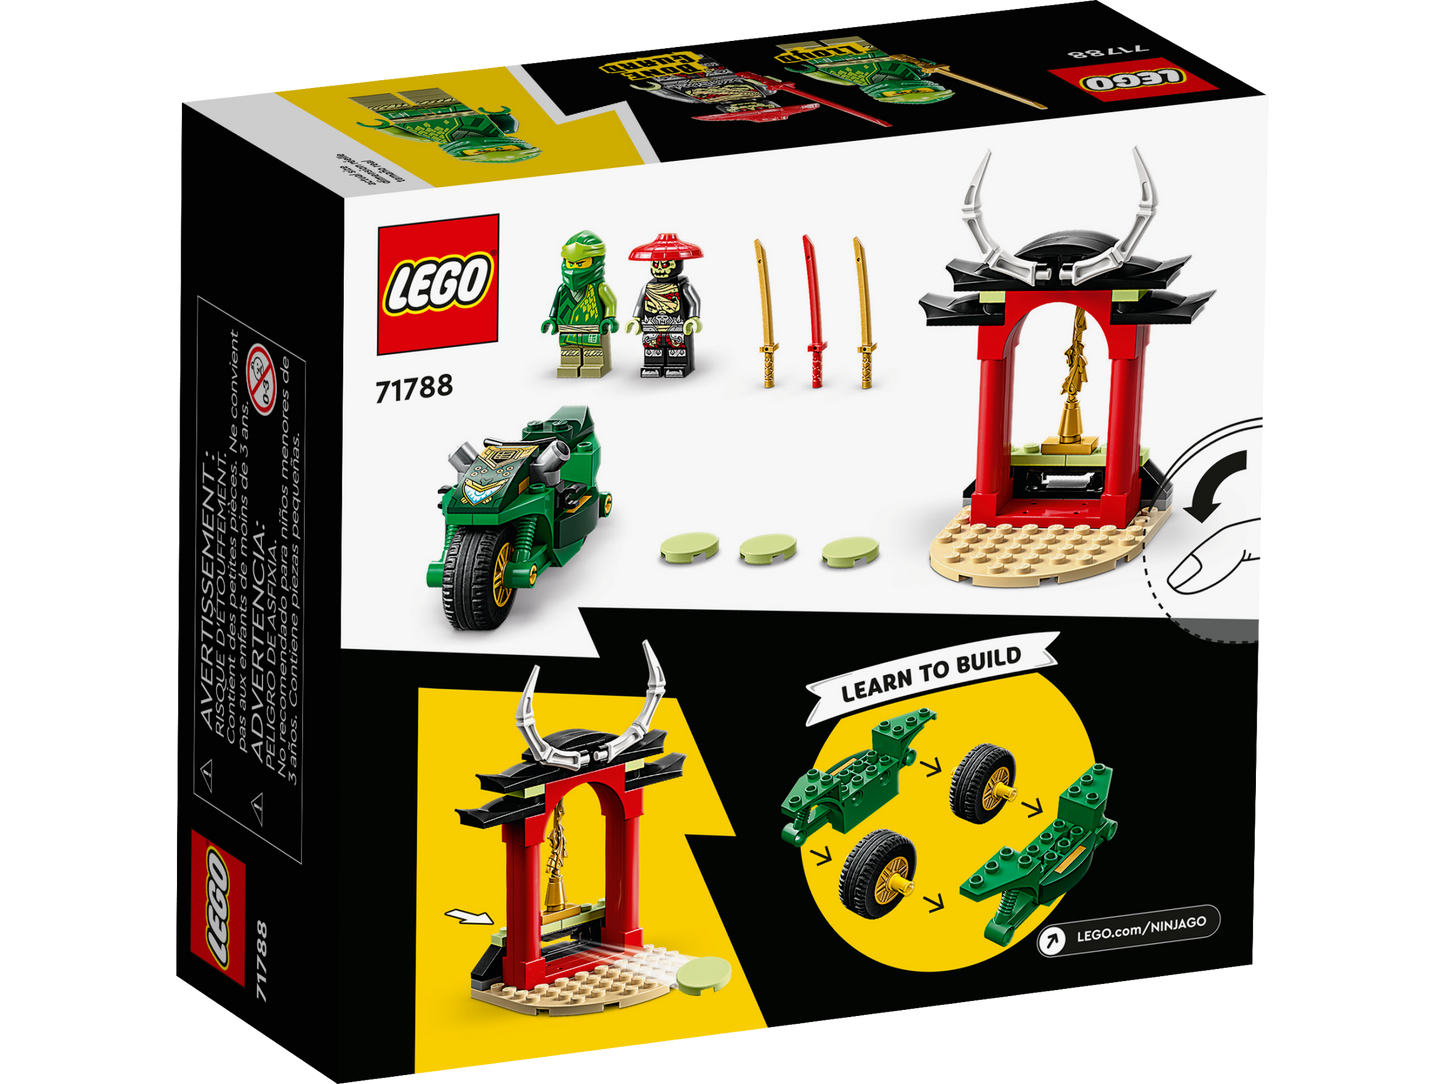 71788 LEGO Ninjago - Moto Ninja di Lloyd